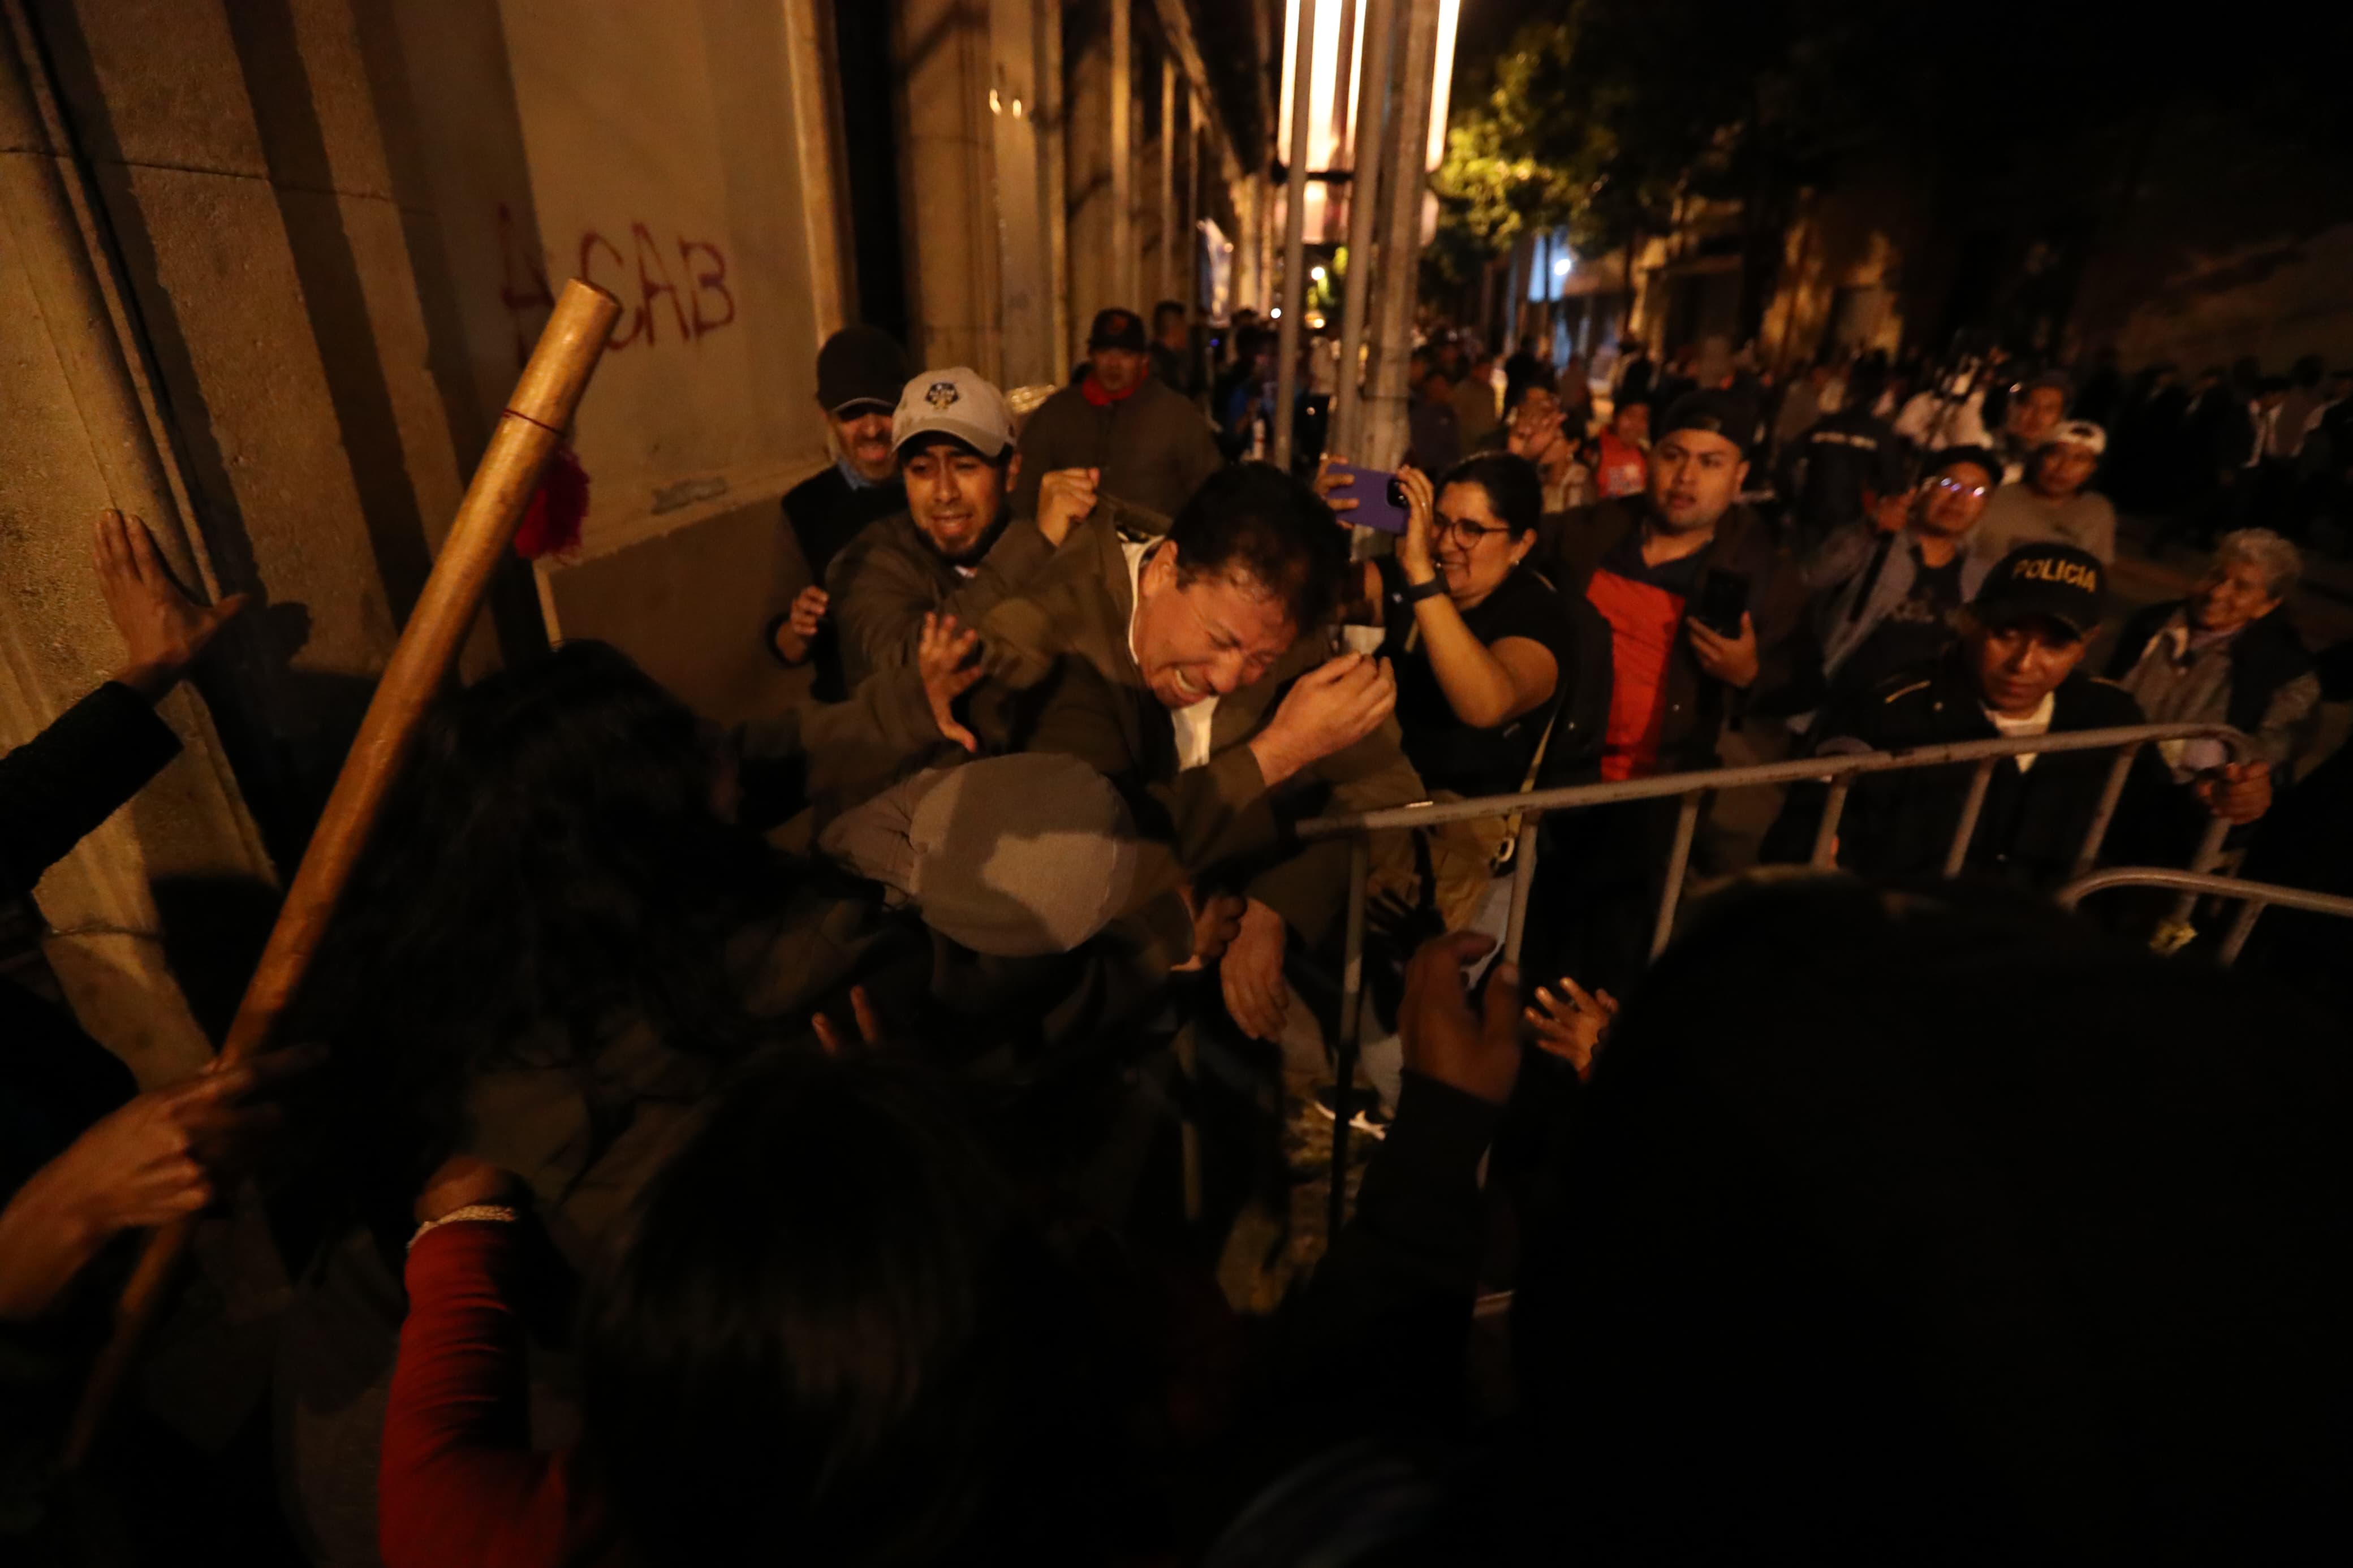 El diputado Geraldin Díaz, de Valor, fue agredido por manifestantes frente al Congreso de la República. (Foto Prensa Libre: Carlos Hernández Ovalle)